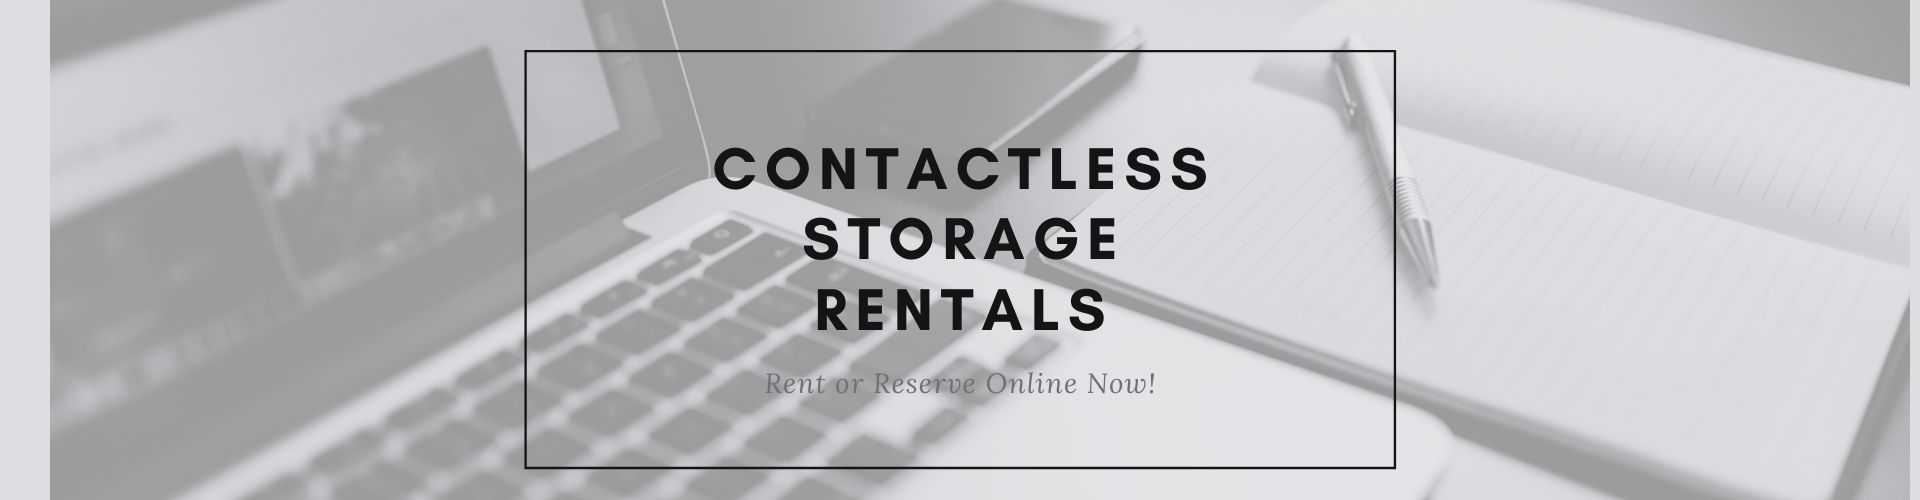 Contacless Storage Rentals - Stirling Storage